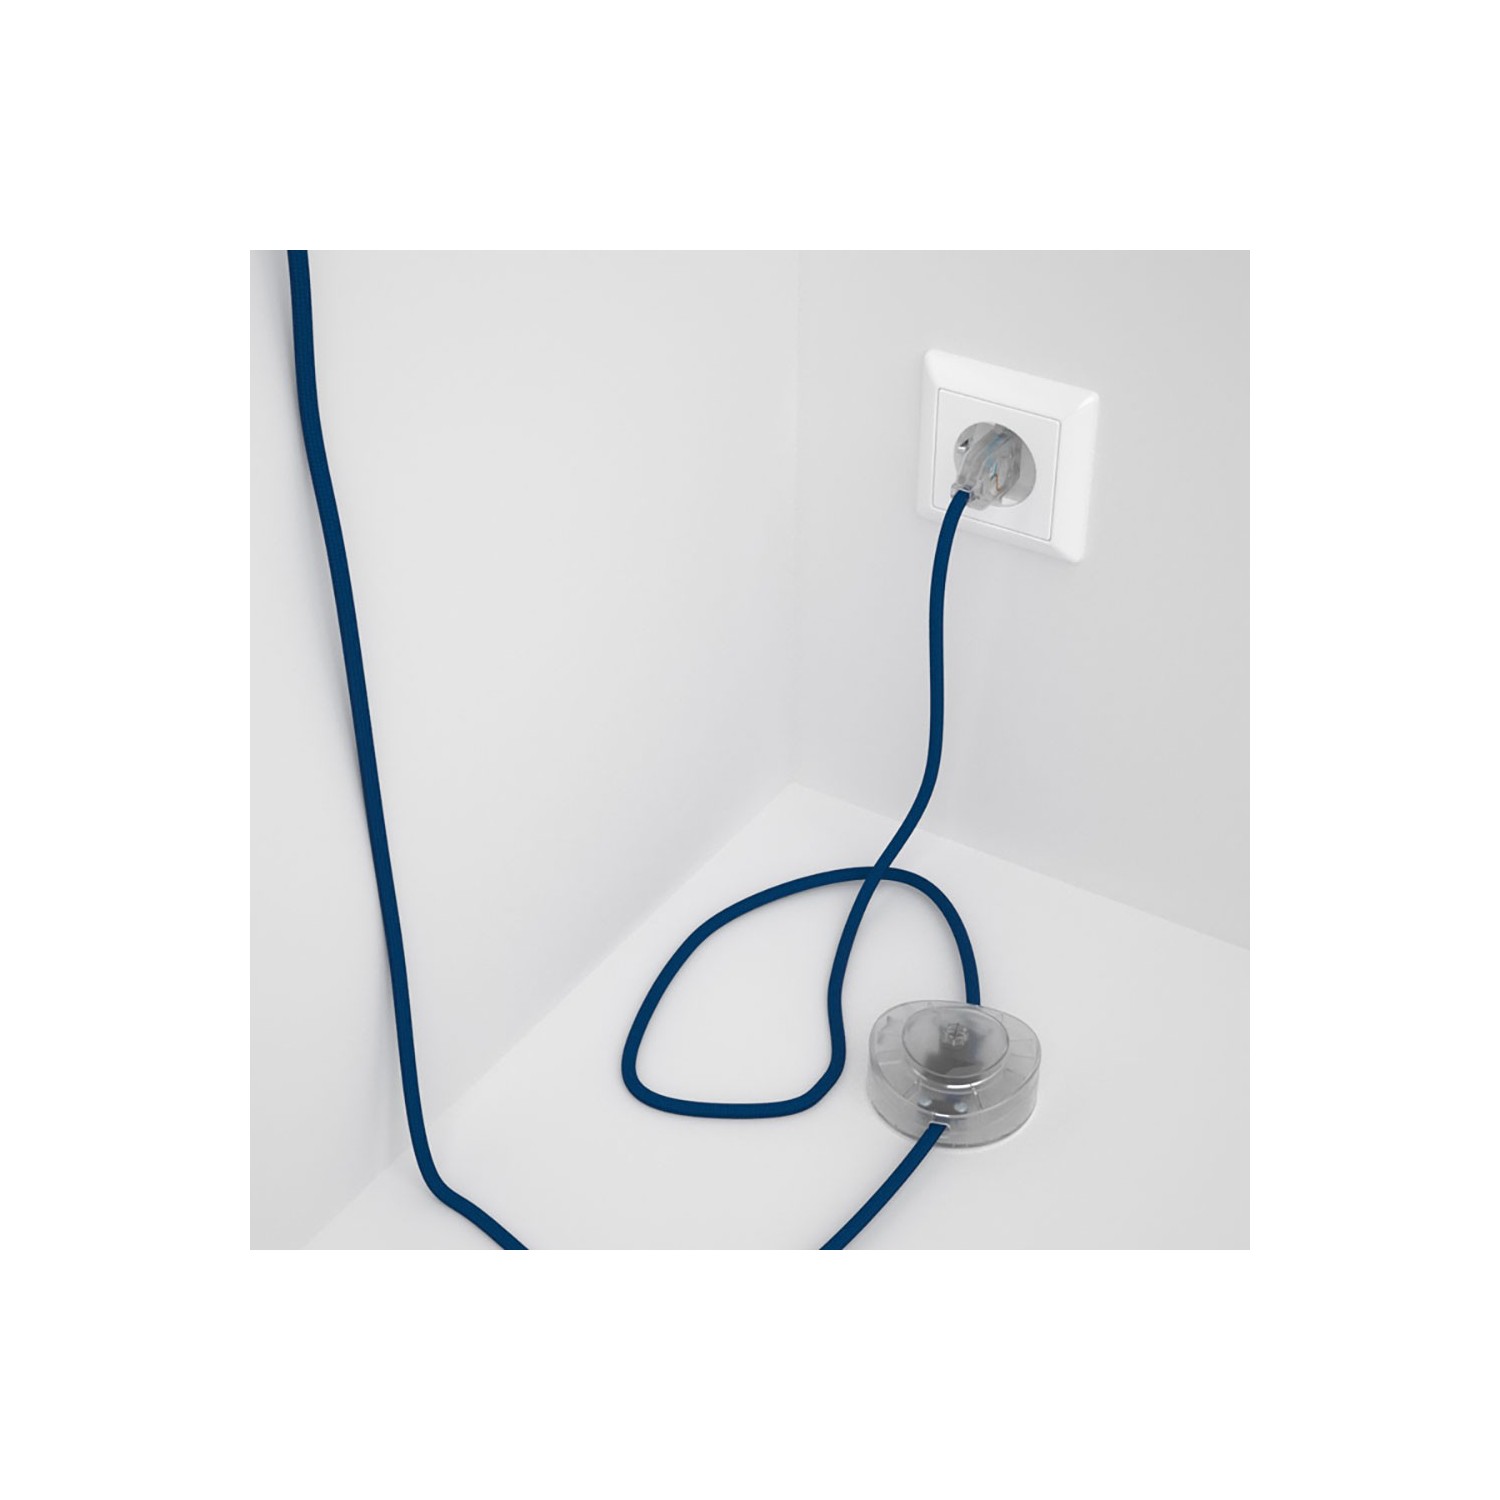 Cordon pour lampadaire, câble RM12 Effet Soie Bleu 3 m. Choisissez la couleur de la fiche et de l'interrupteur!